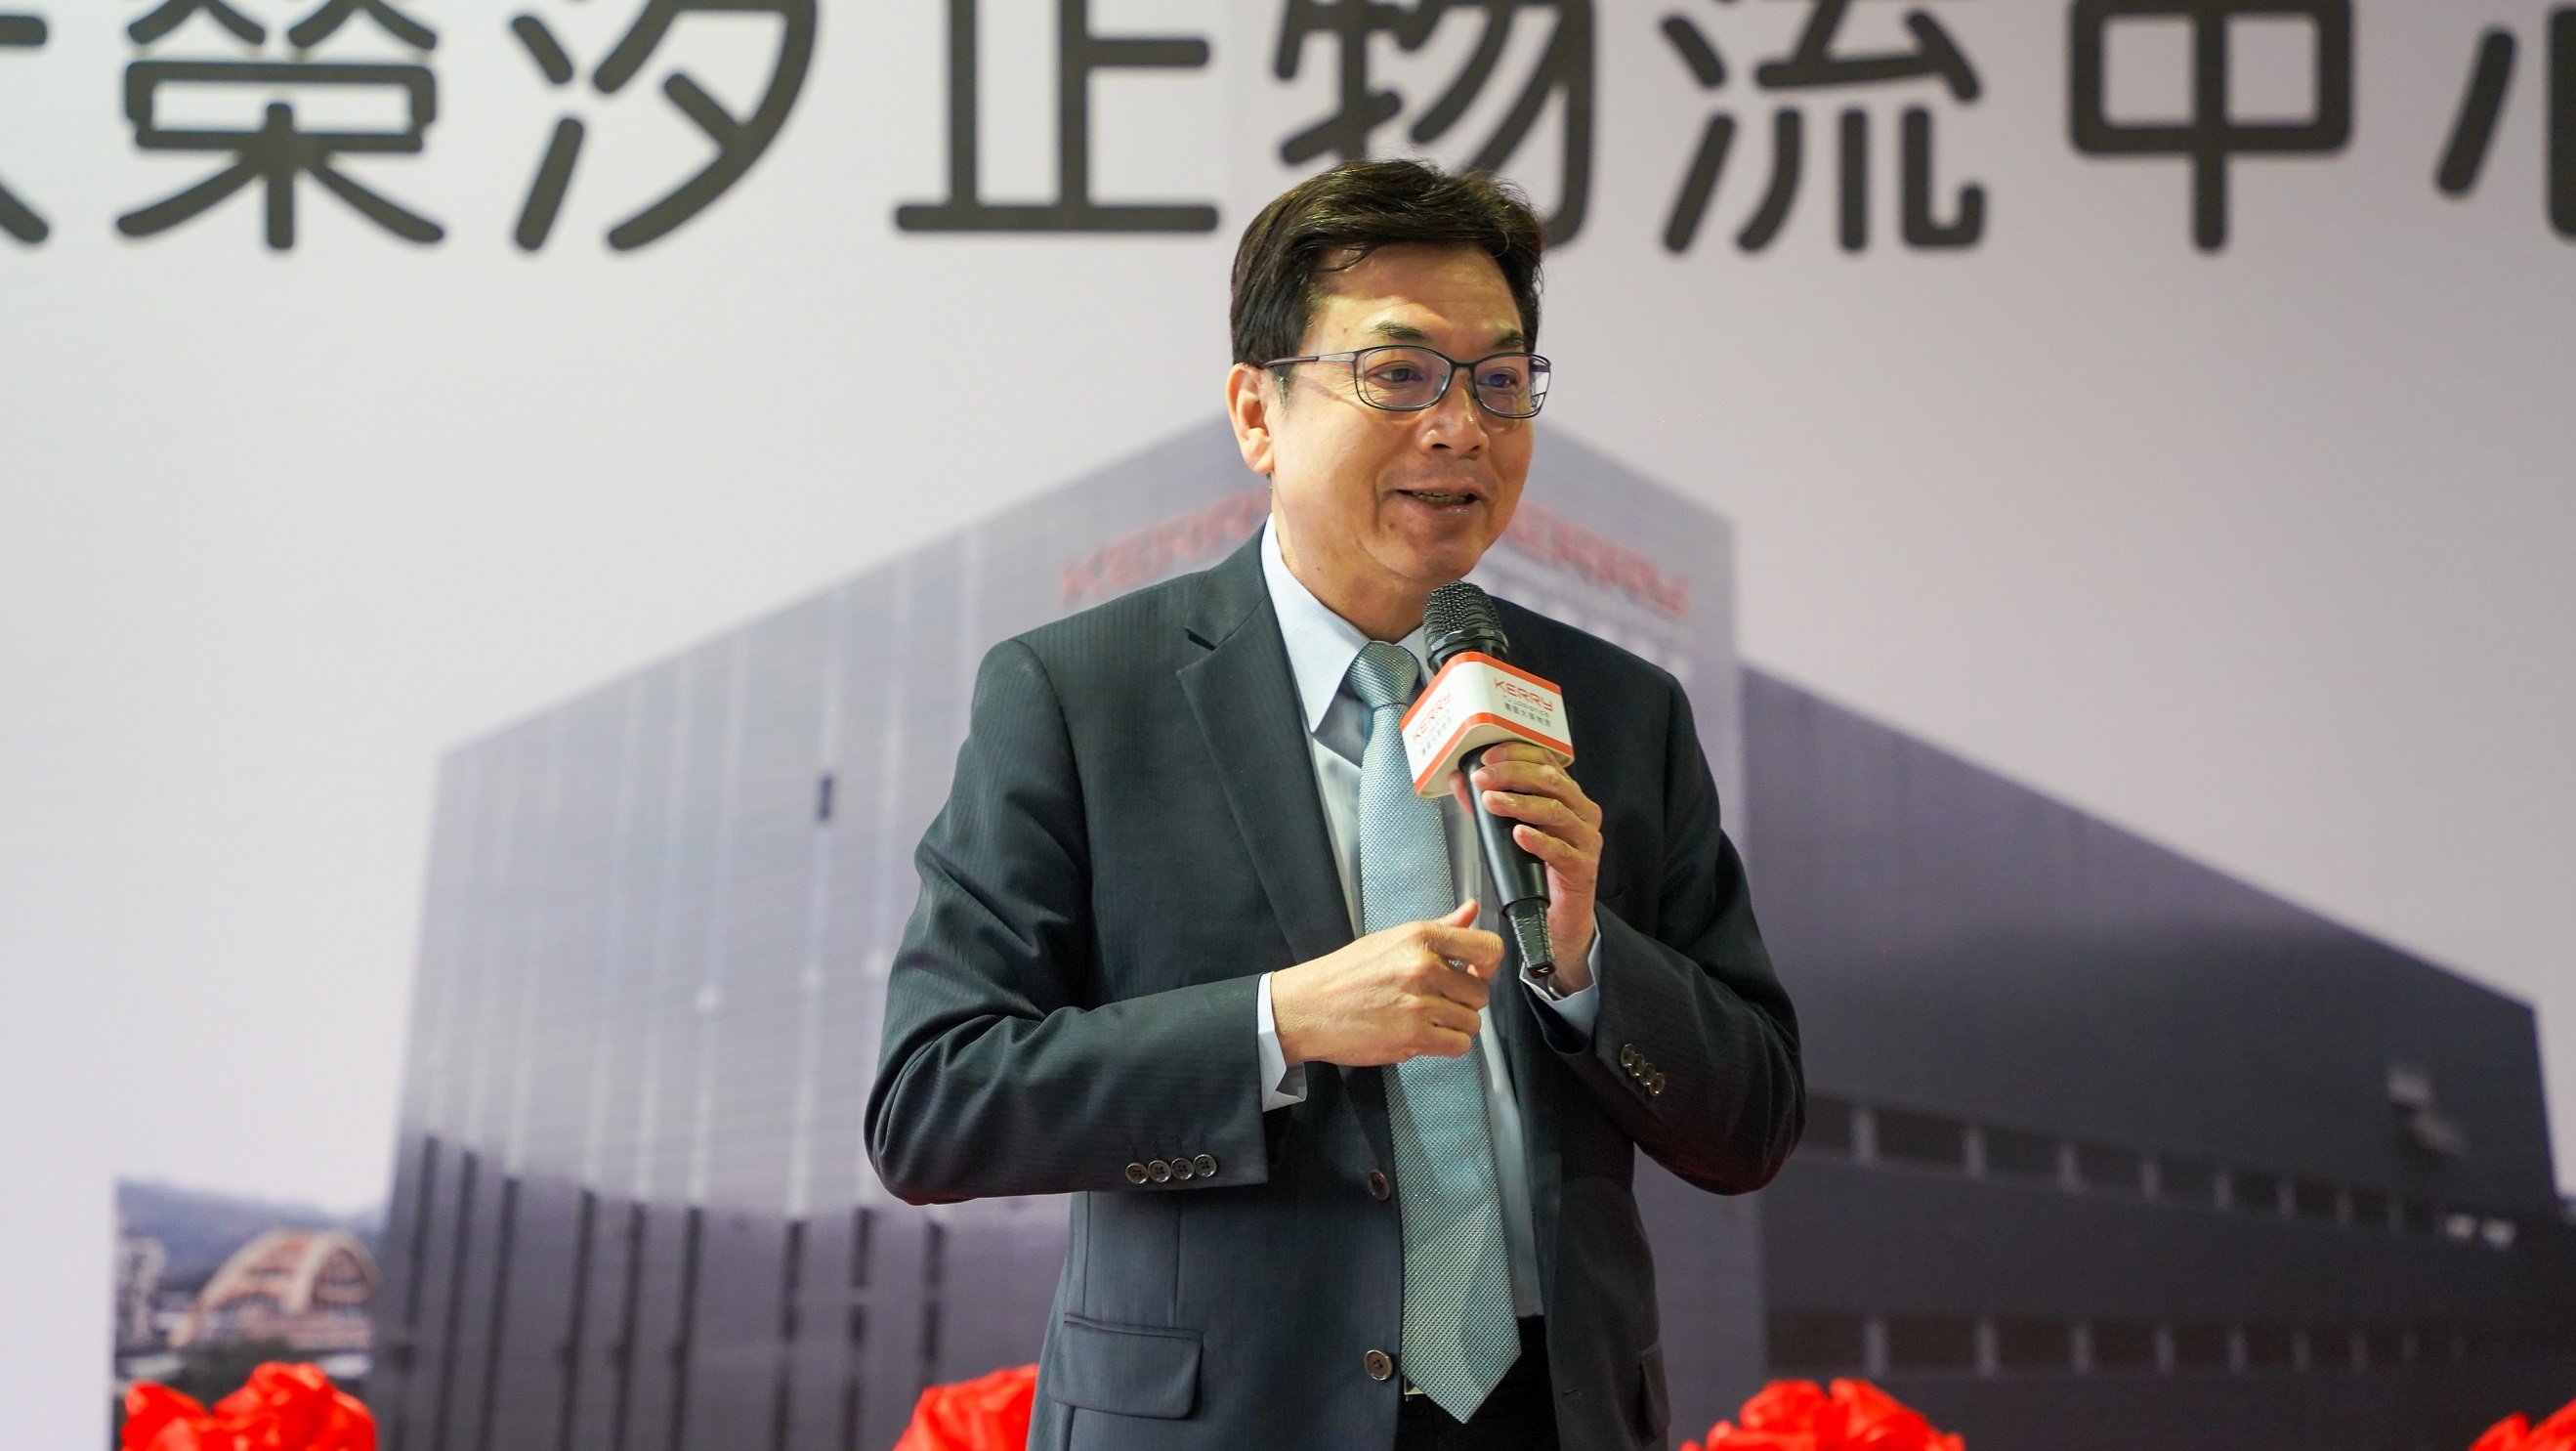 新北市副市長劉和然表示，期盼嘉里大榮的進駐強化新北發展物流經濟及生技醫療產業功能，打造國際級物流樞紐。